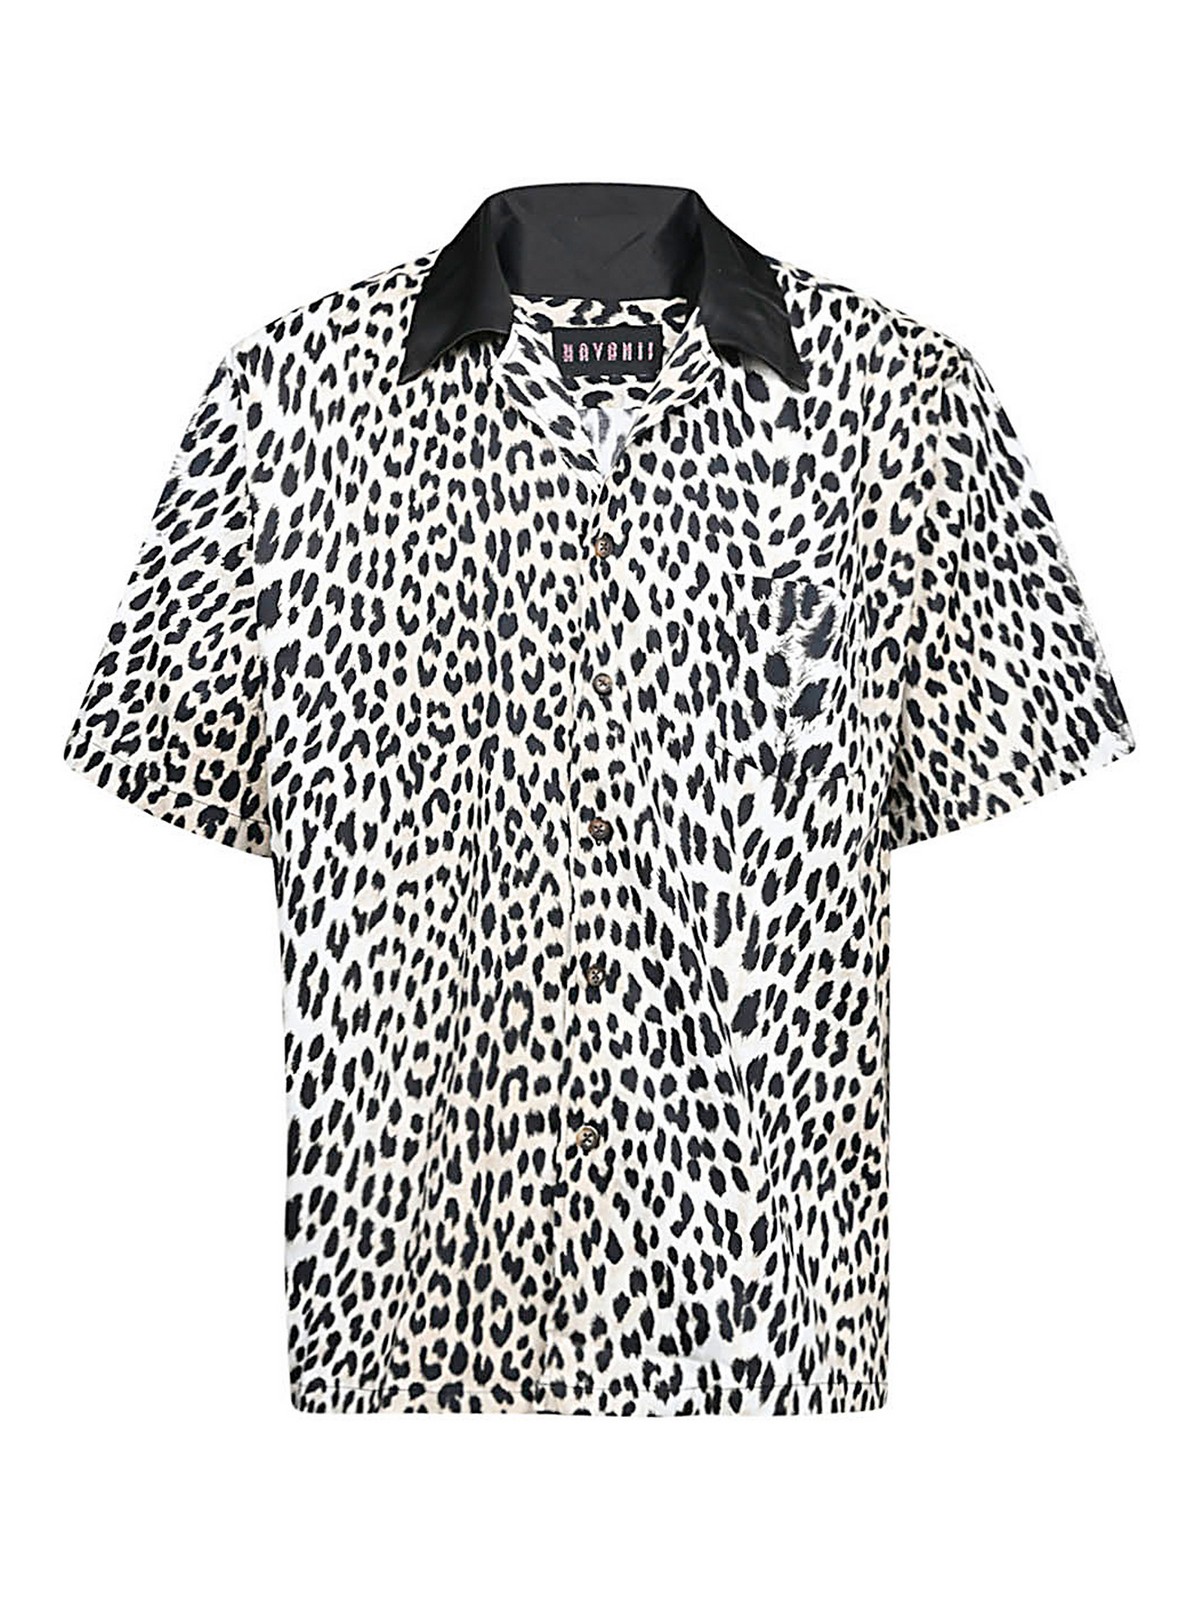 Havanii Leopard Print Cotton Shirt In Black